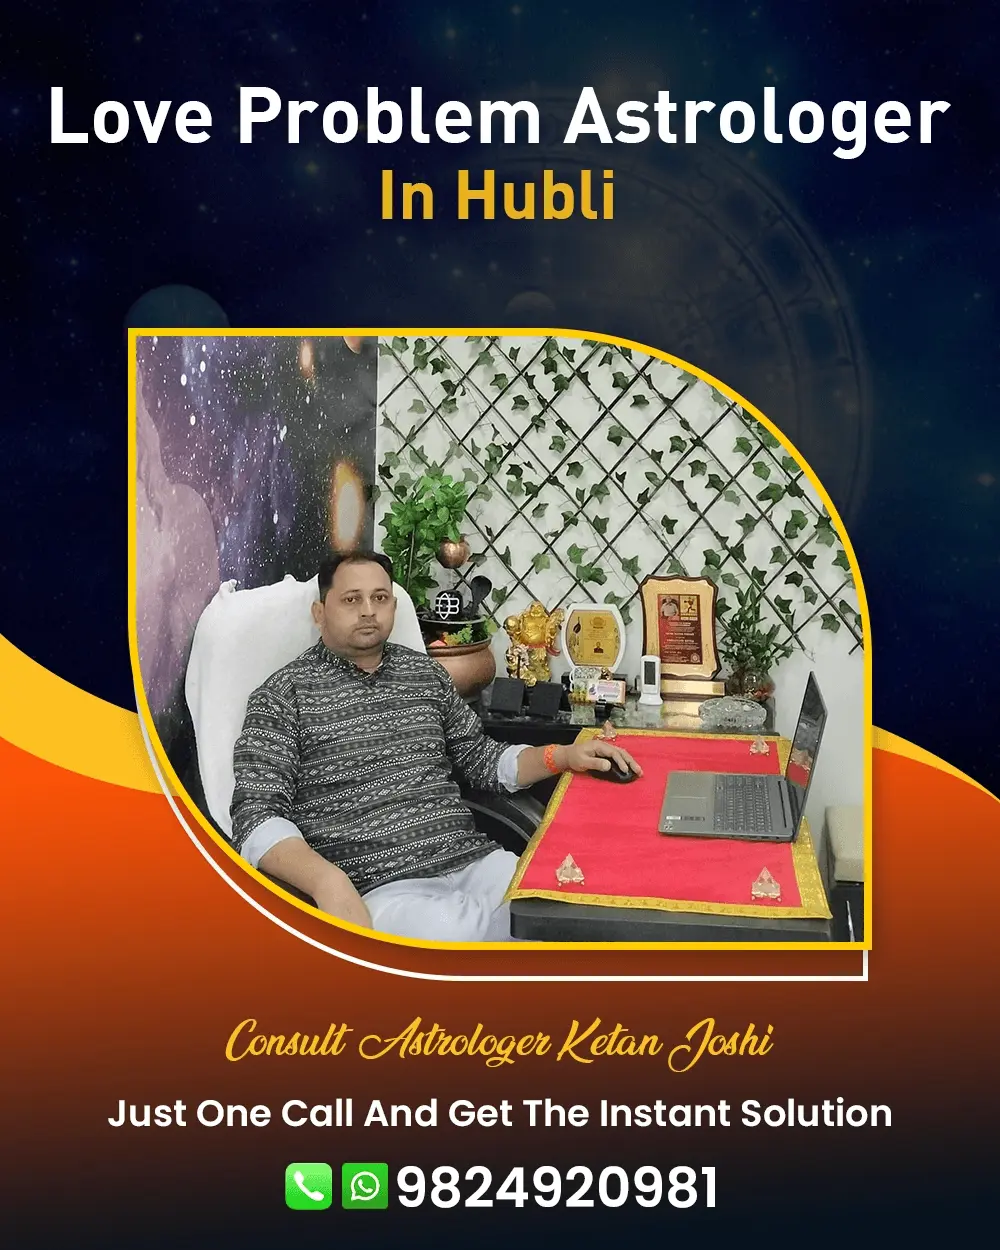 Love Problem Astrologer In Hubli